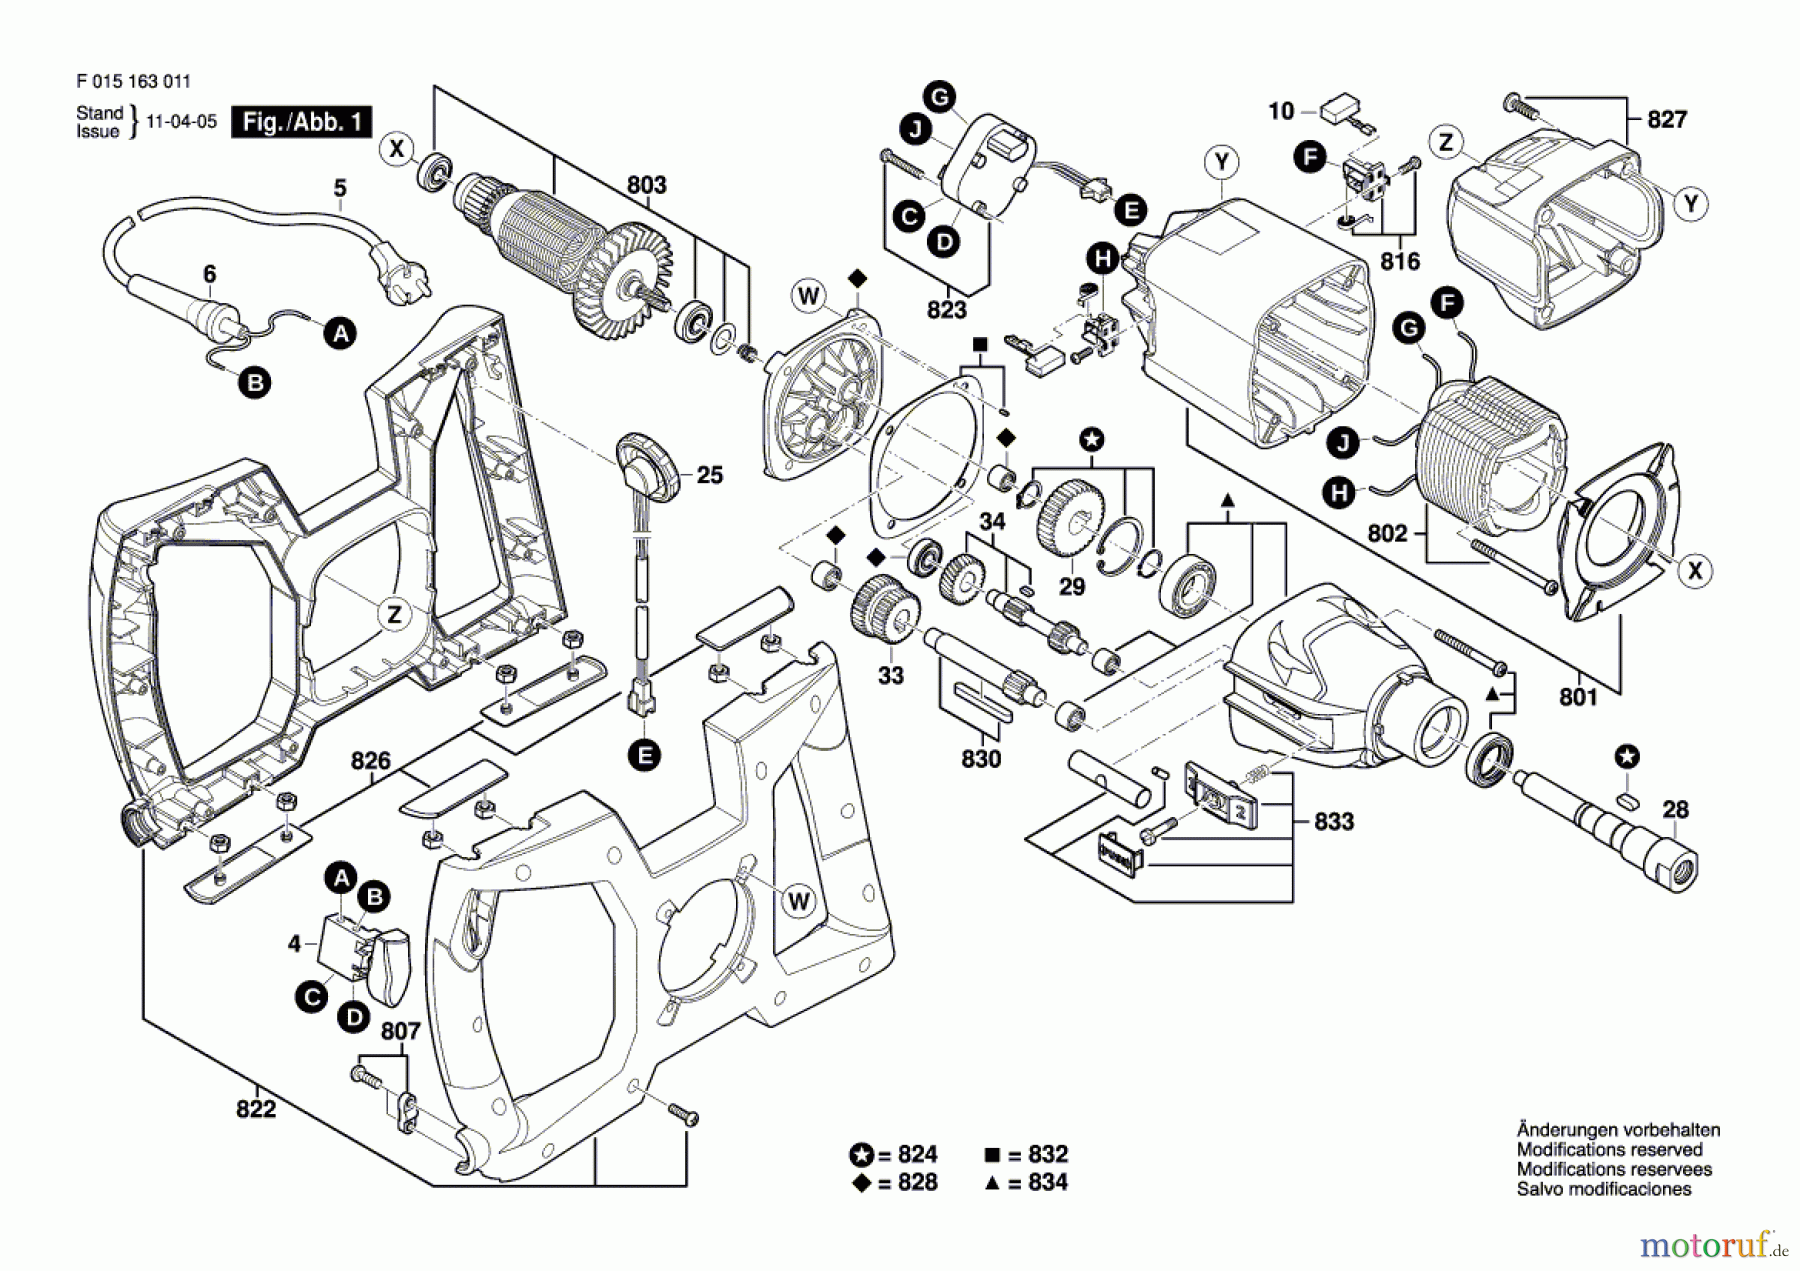  Bosch Werkzeug Rührwerk 1630 Seite 1